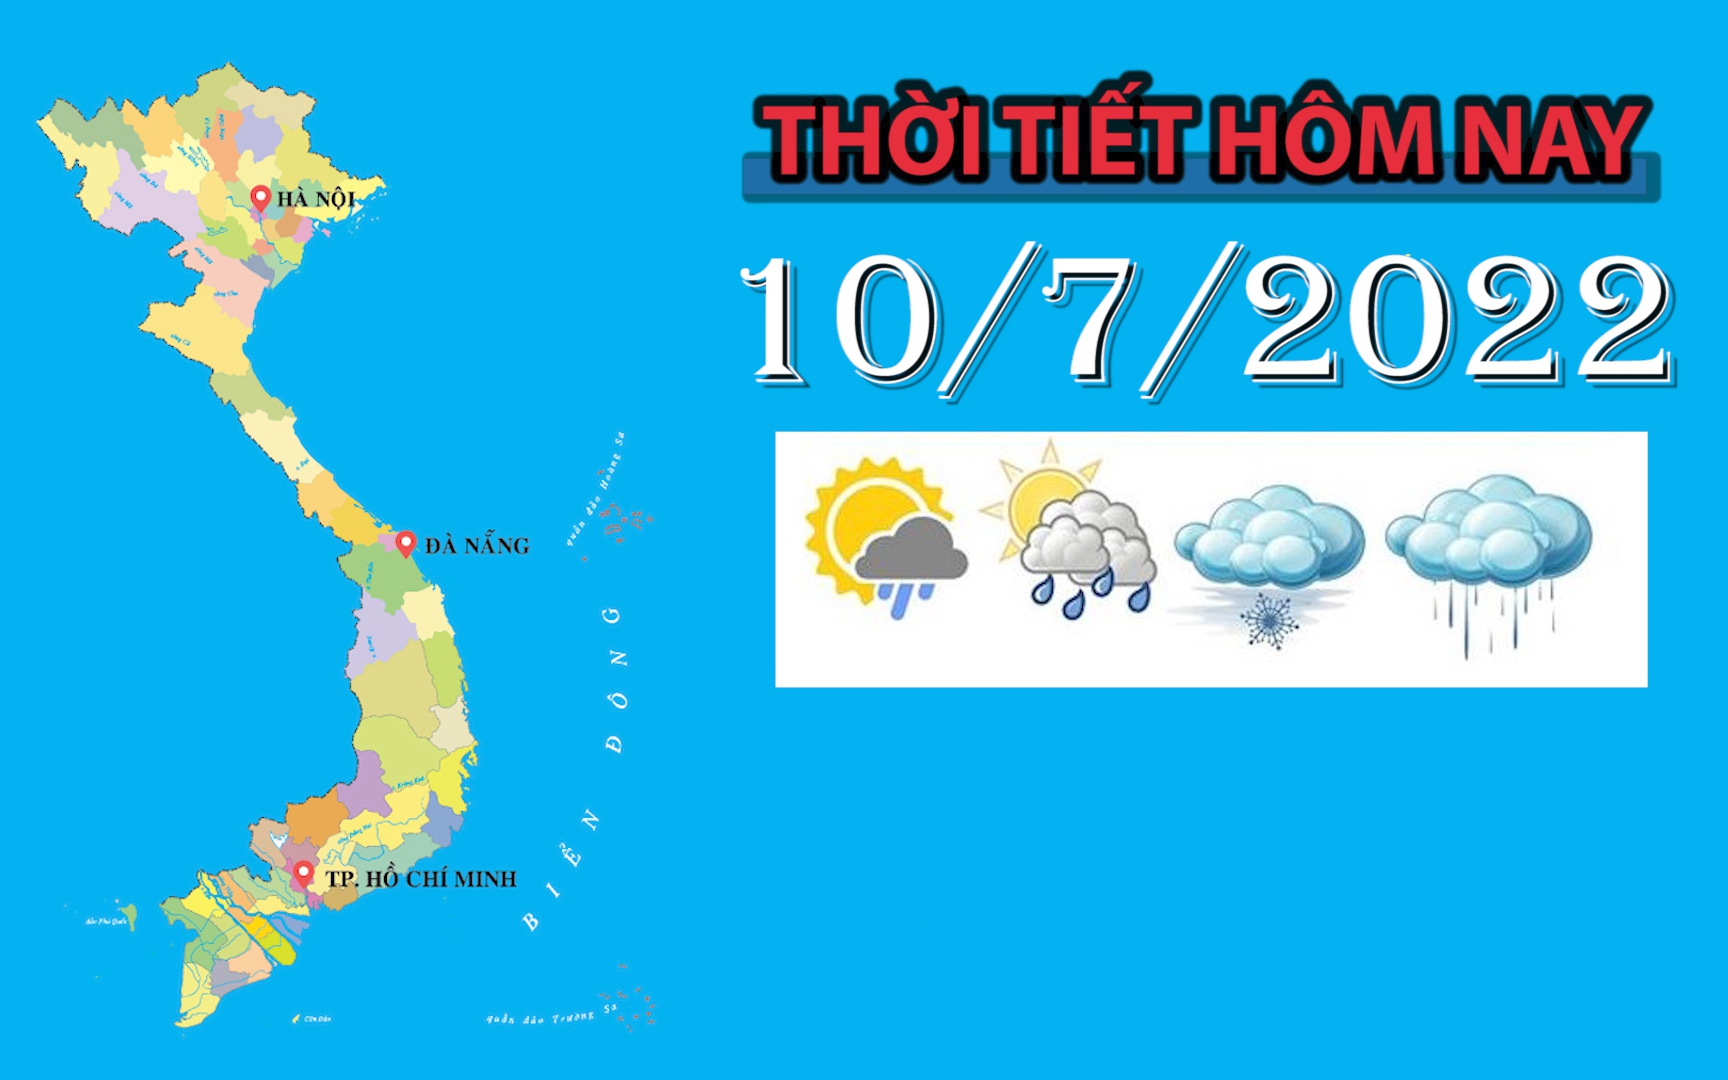 Thời tiết hôm nay 10/7/2022: Hà Nội trời mát, sáng có mưa dông